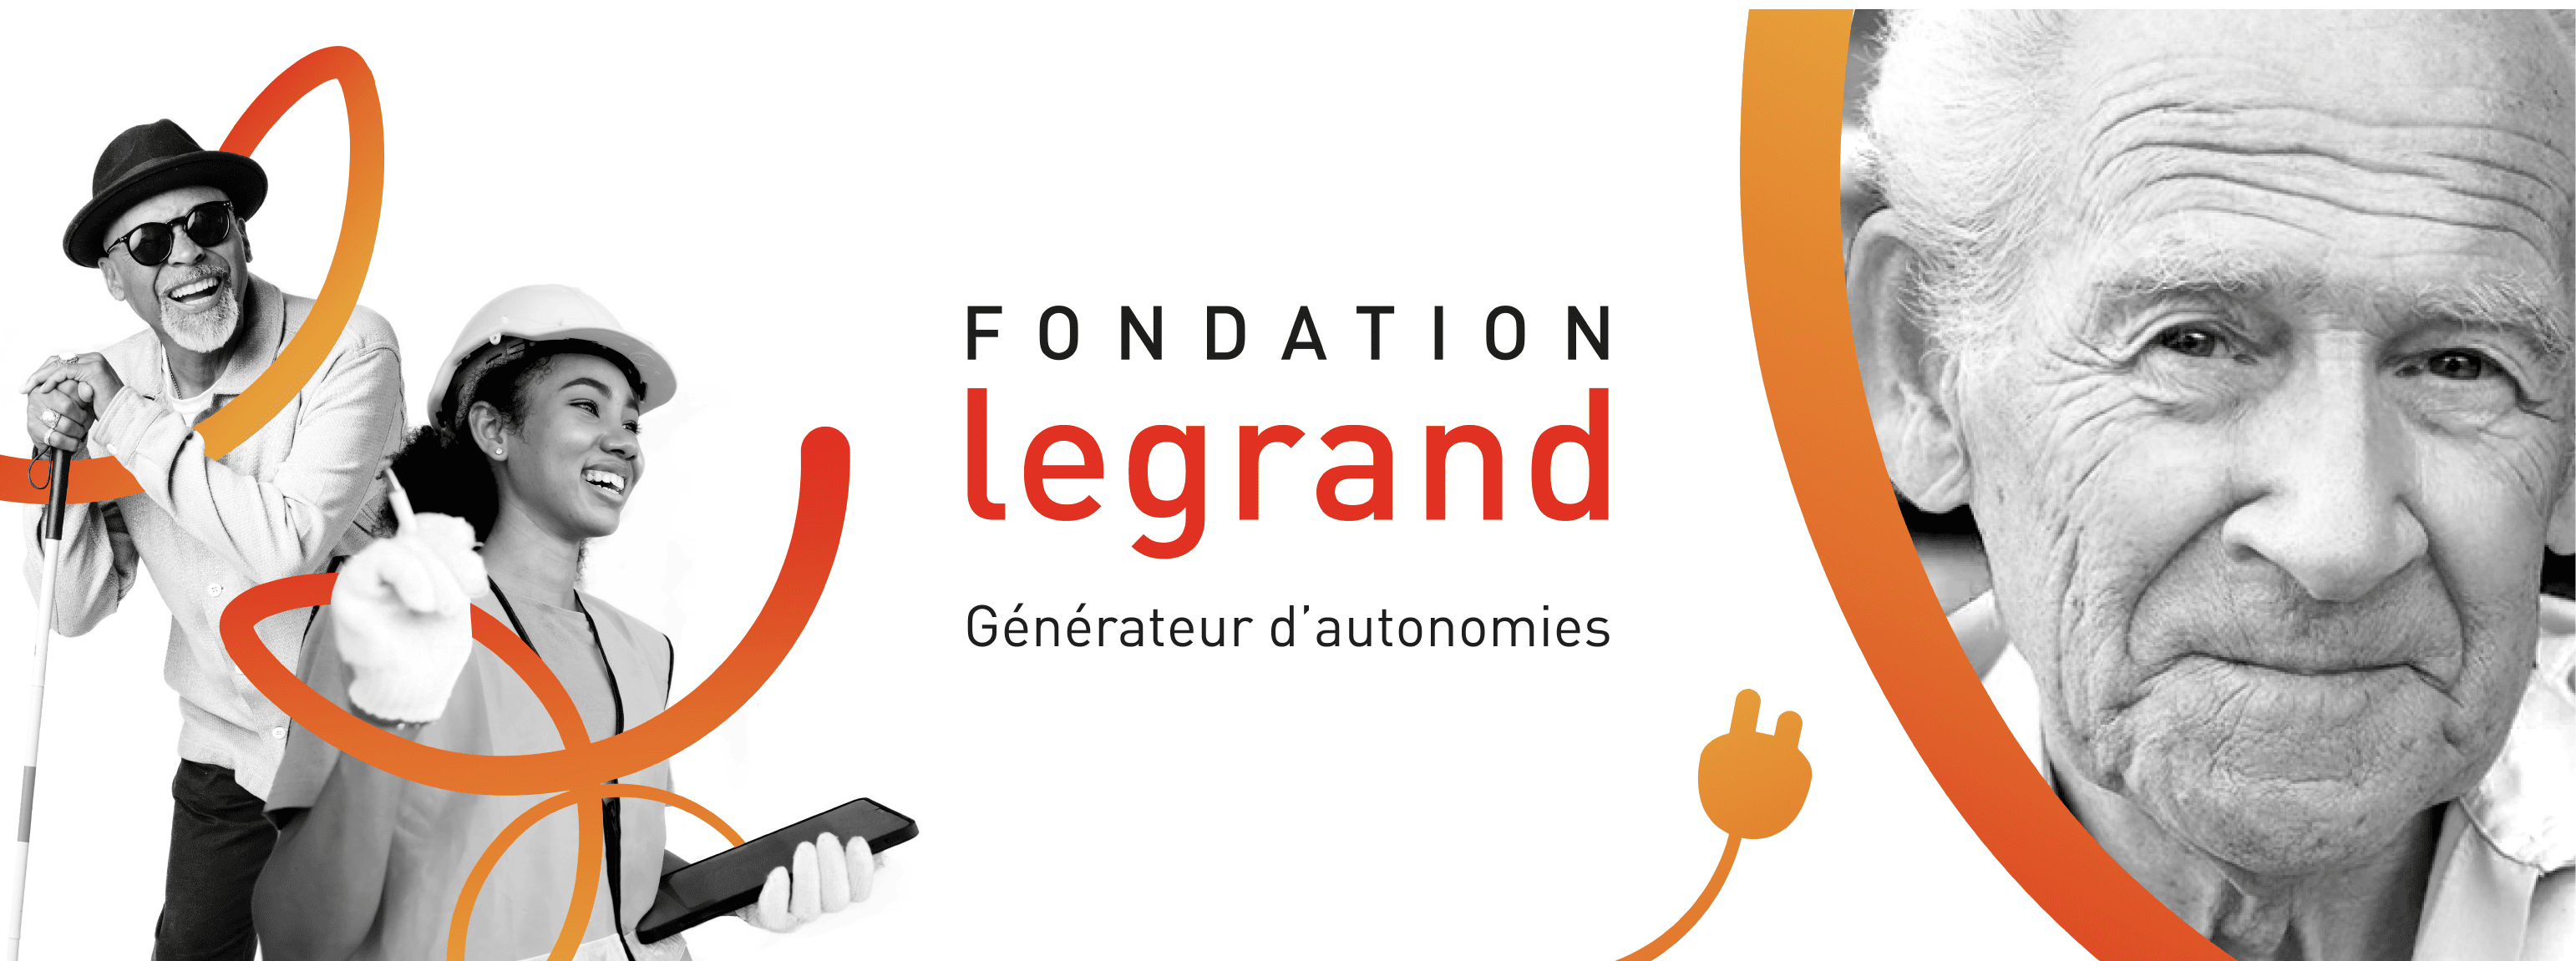 Fondation Legrand bandeau réseaux sociaux